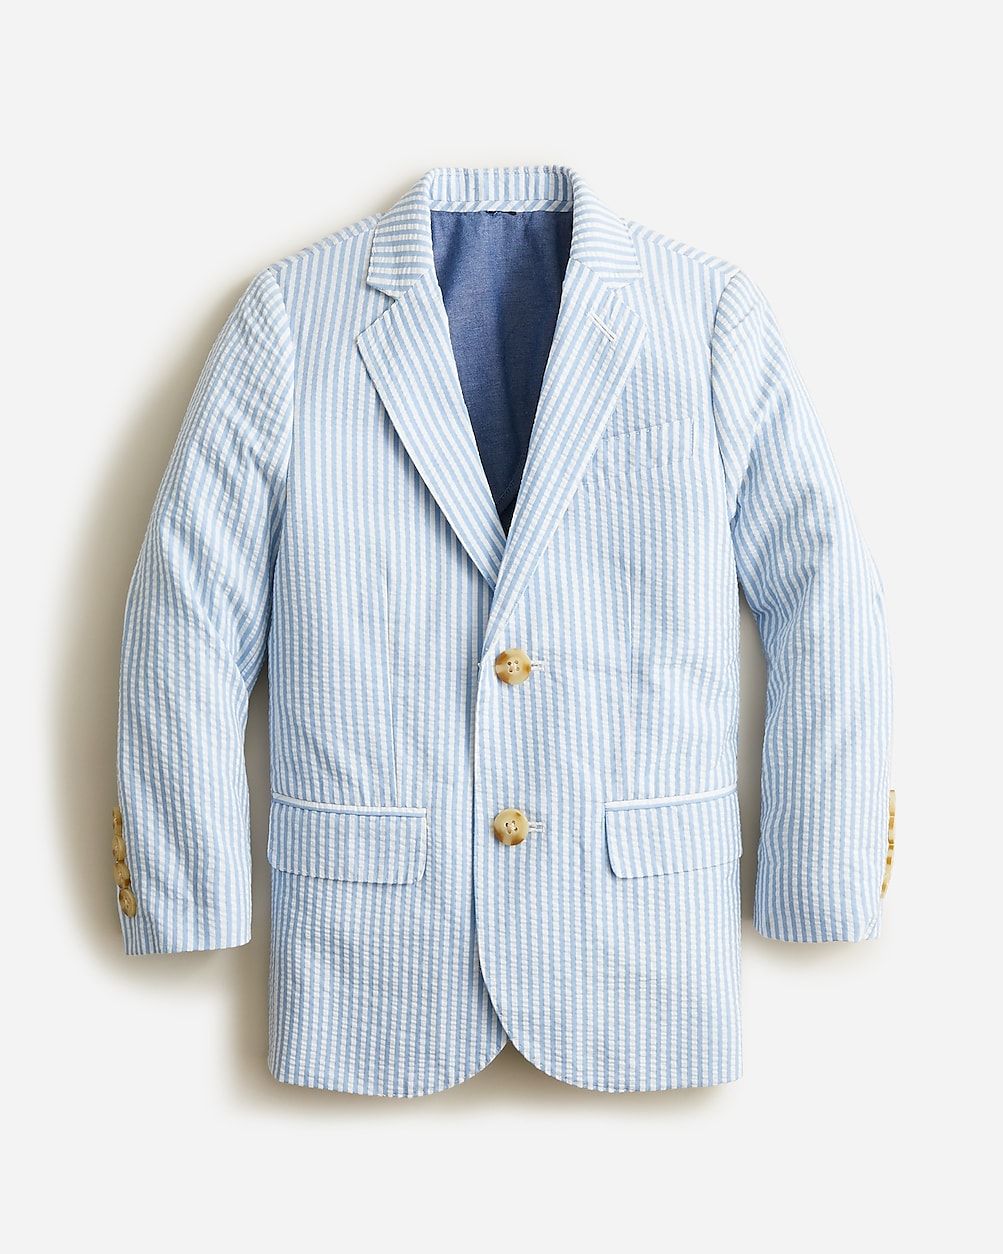 Boys' Ludlow suit jacket in seersucker | J.Crew US